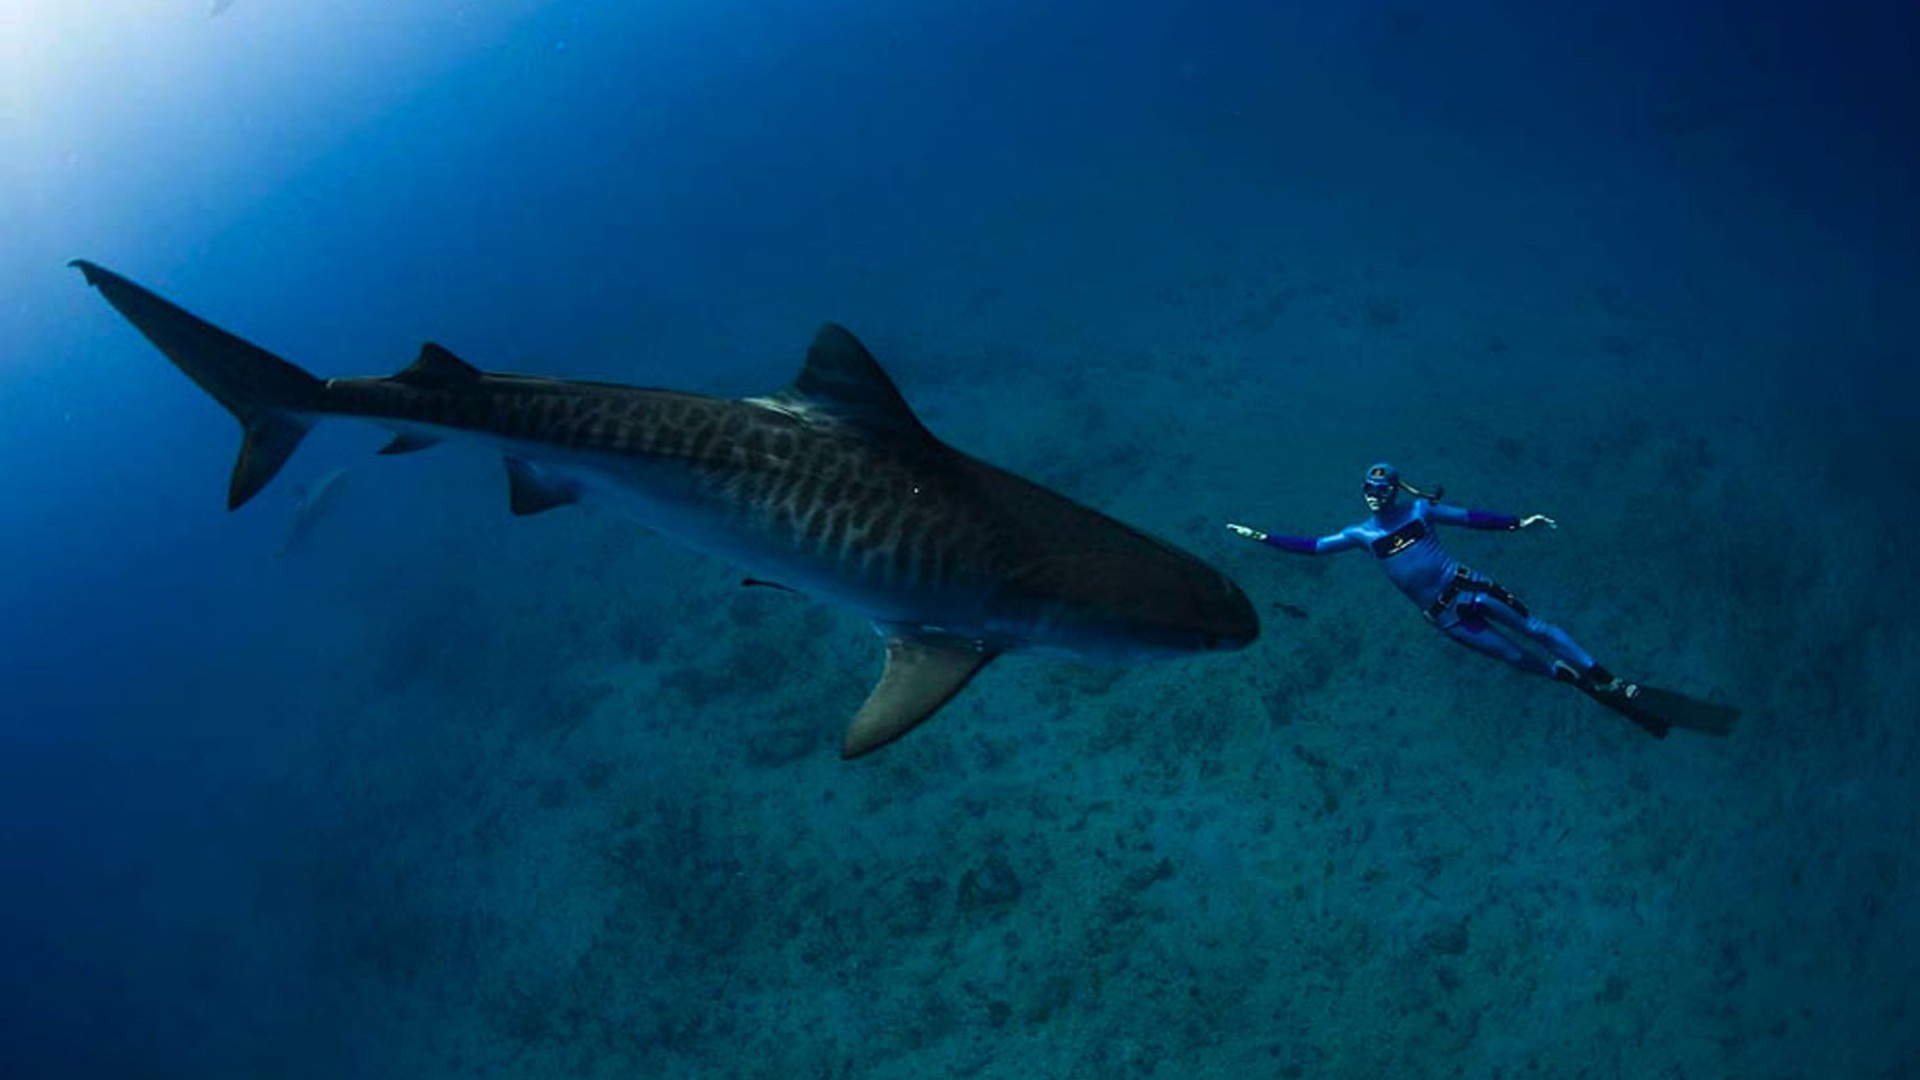 Sand Tiger Shark Ocean Underwater World Sharks Reef Fish